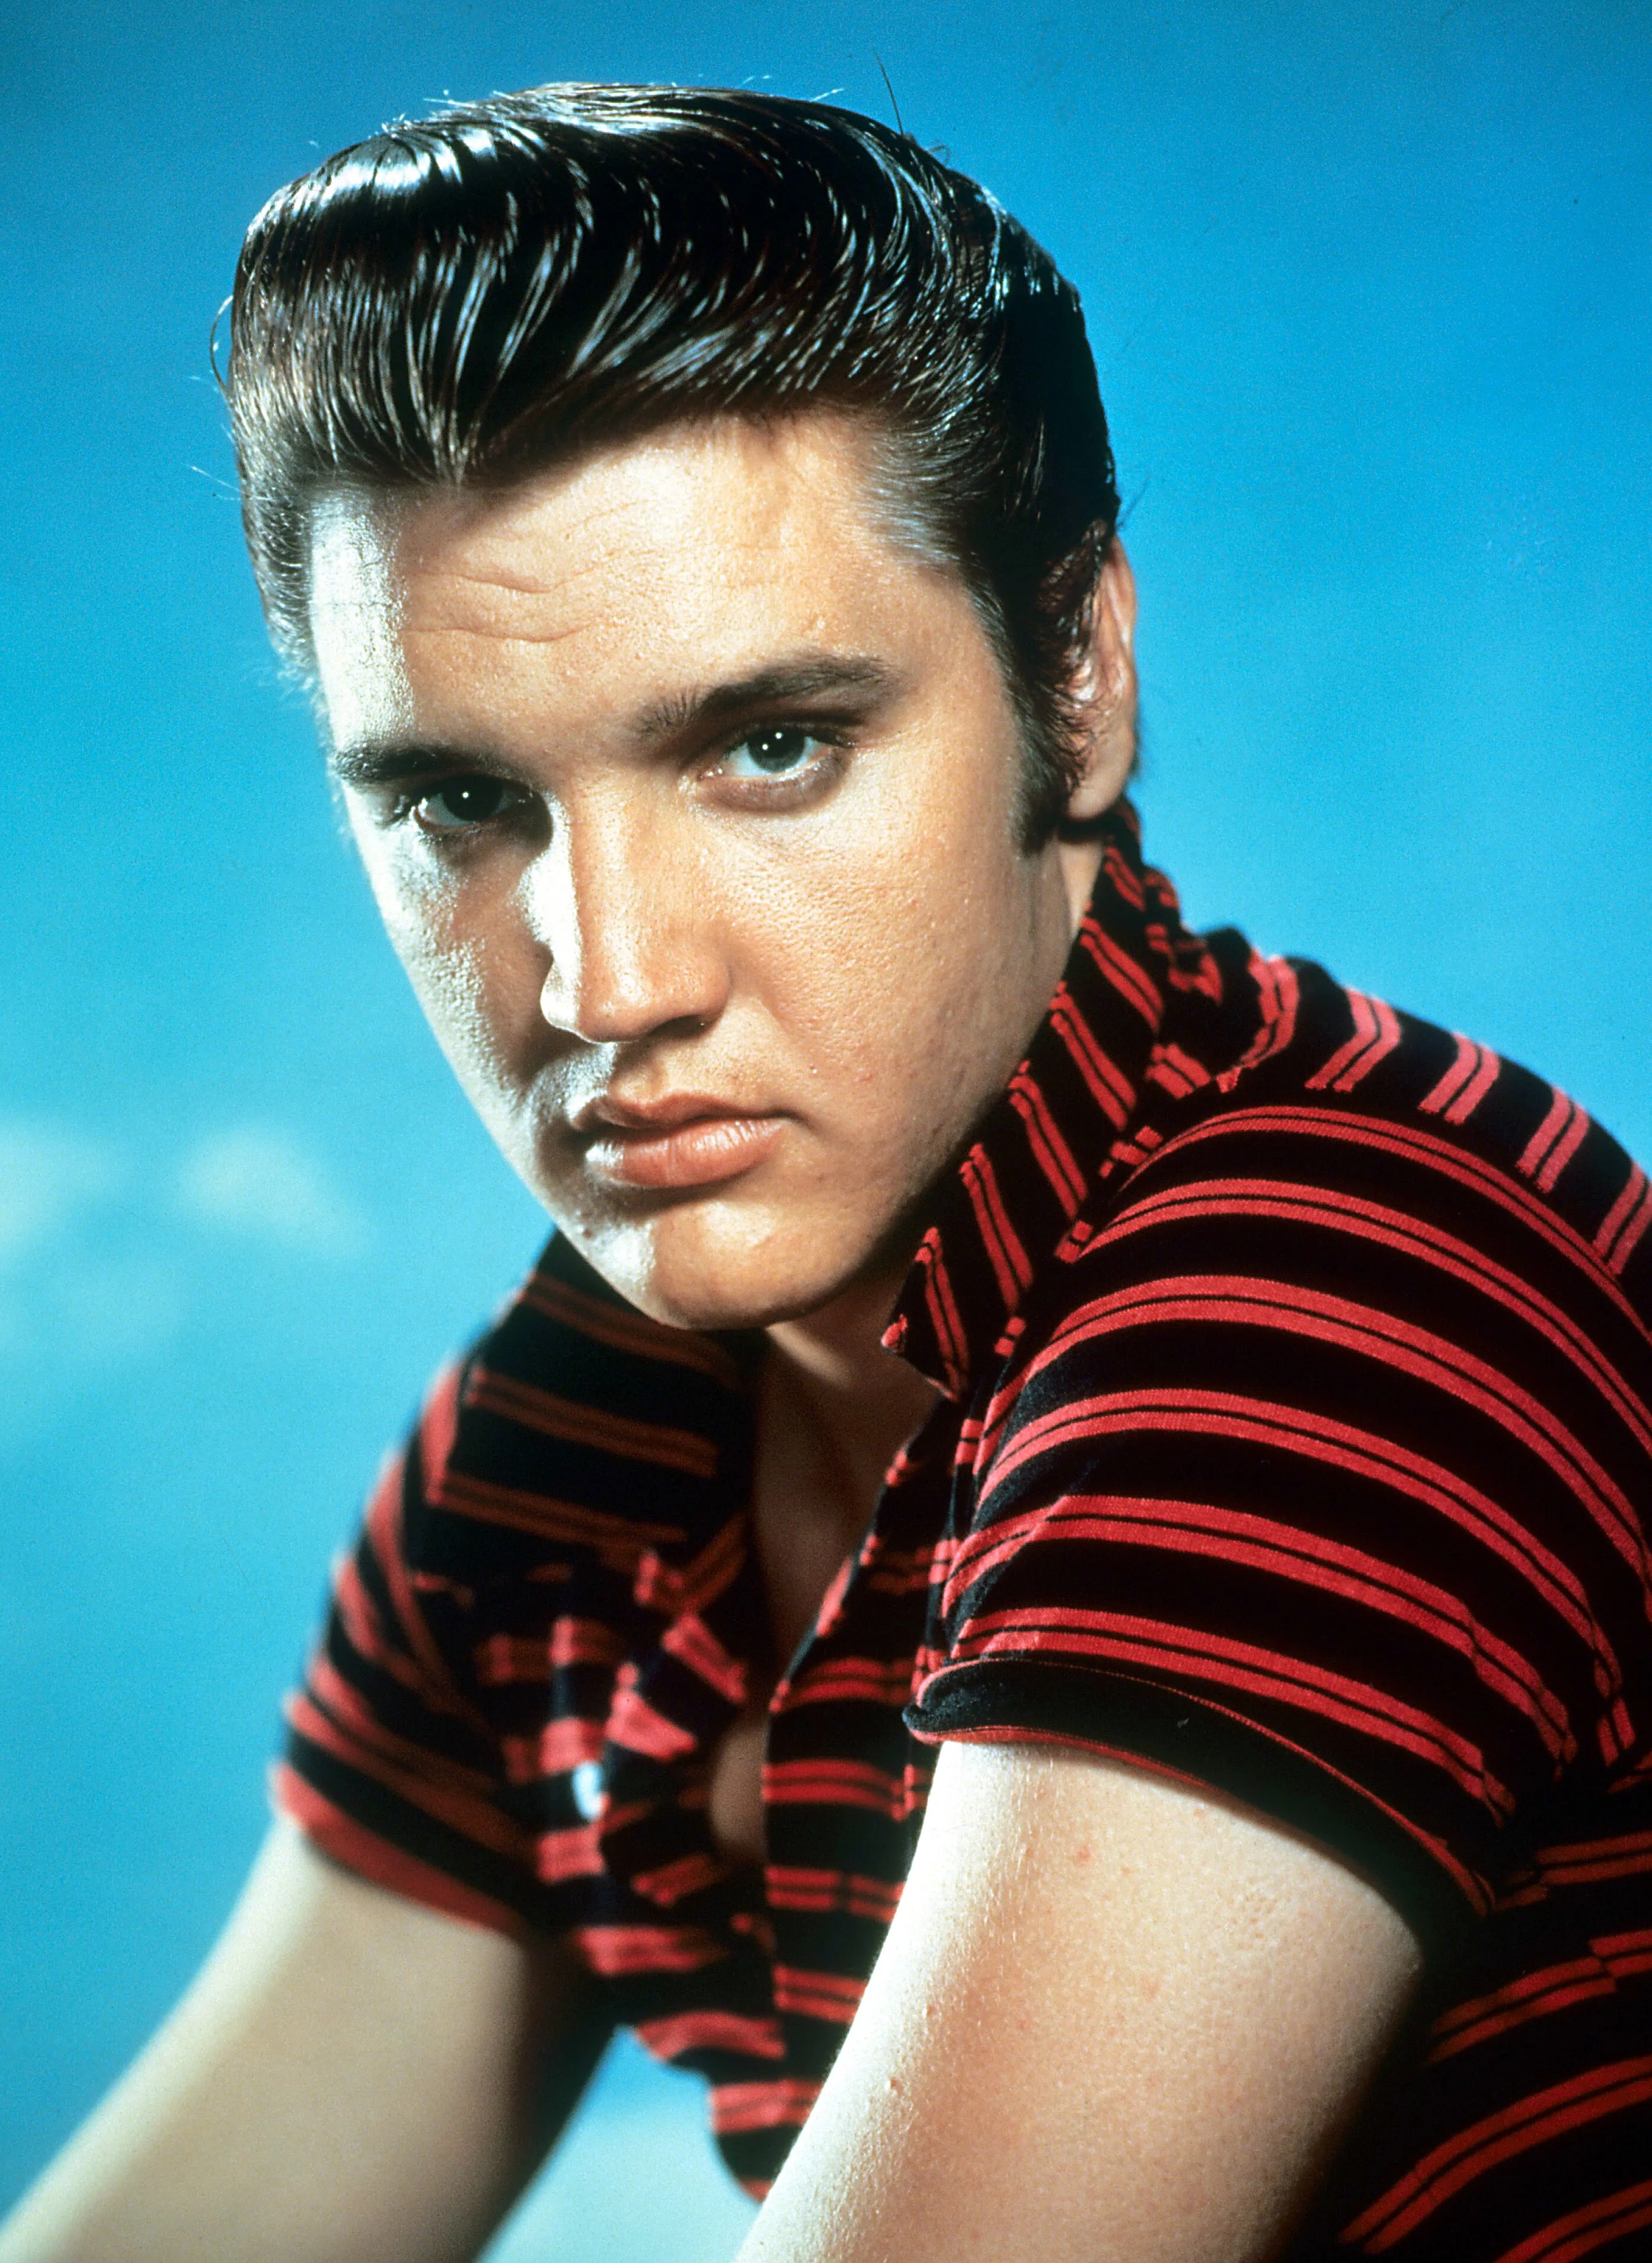 Elvis gab sein Vegas-Debüt 1956 im Alter von 21 Jahren